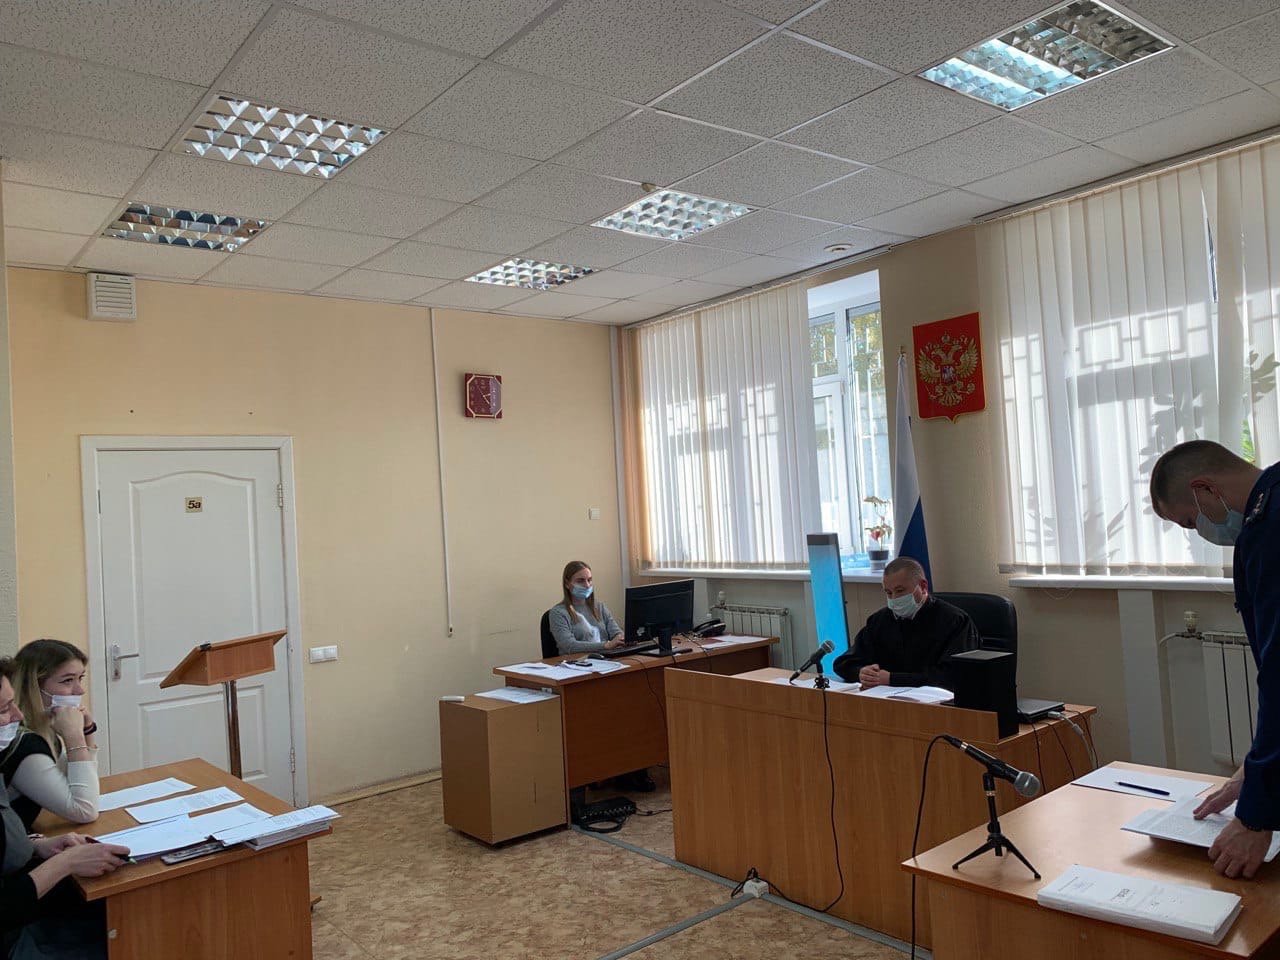 

Суд в Ижевске приступил к рассмотрению дела в отношении участницы январского митинга

